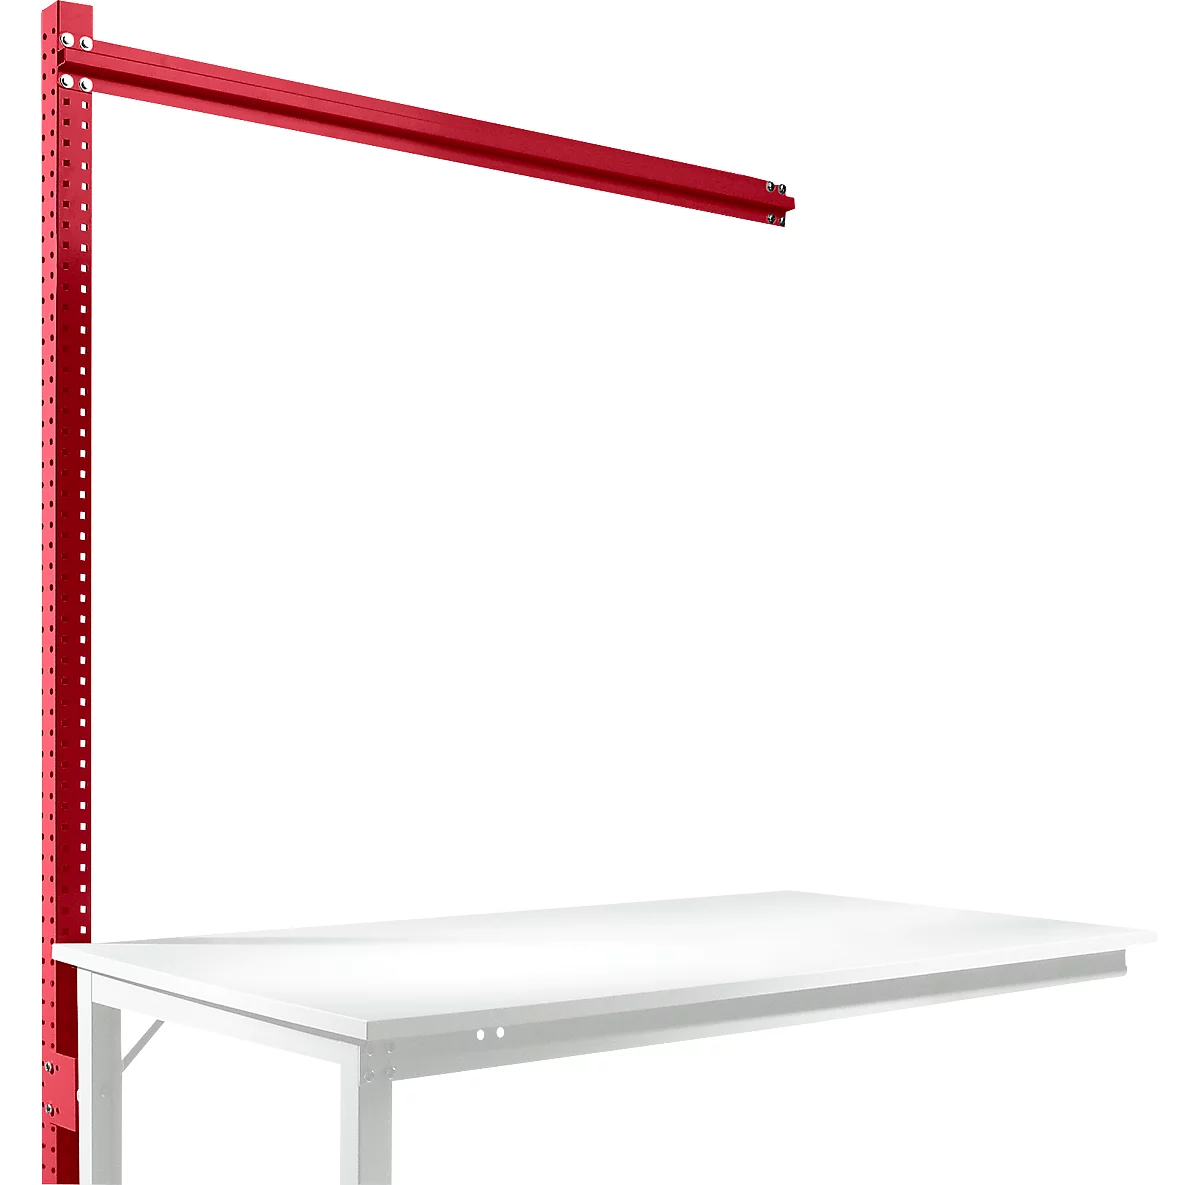 Estructura pórtica adicional para mesa de extensión STANDARD sistema mesa de trabajo/banco de trabajo UNIVERSAL/PROFI, 1500 mm, rojo rubí